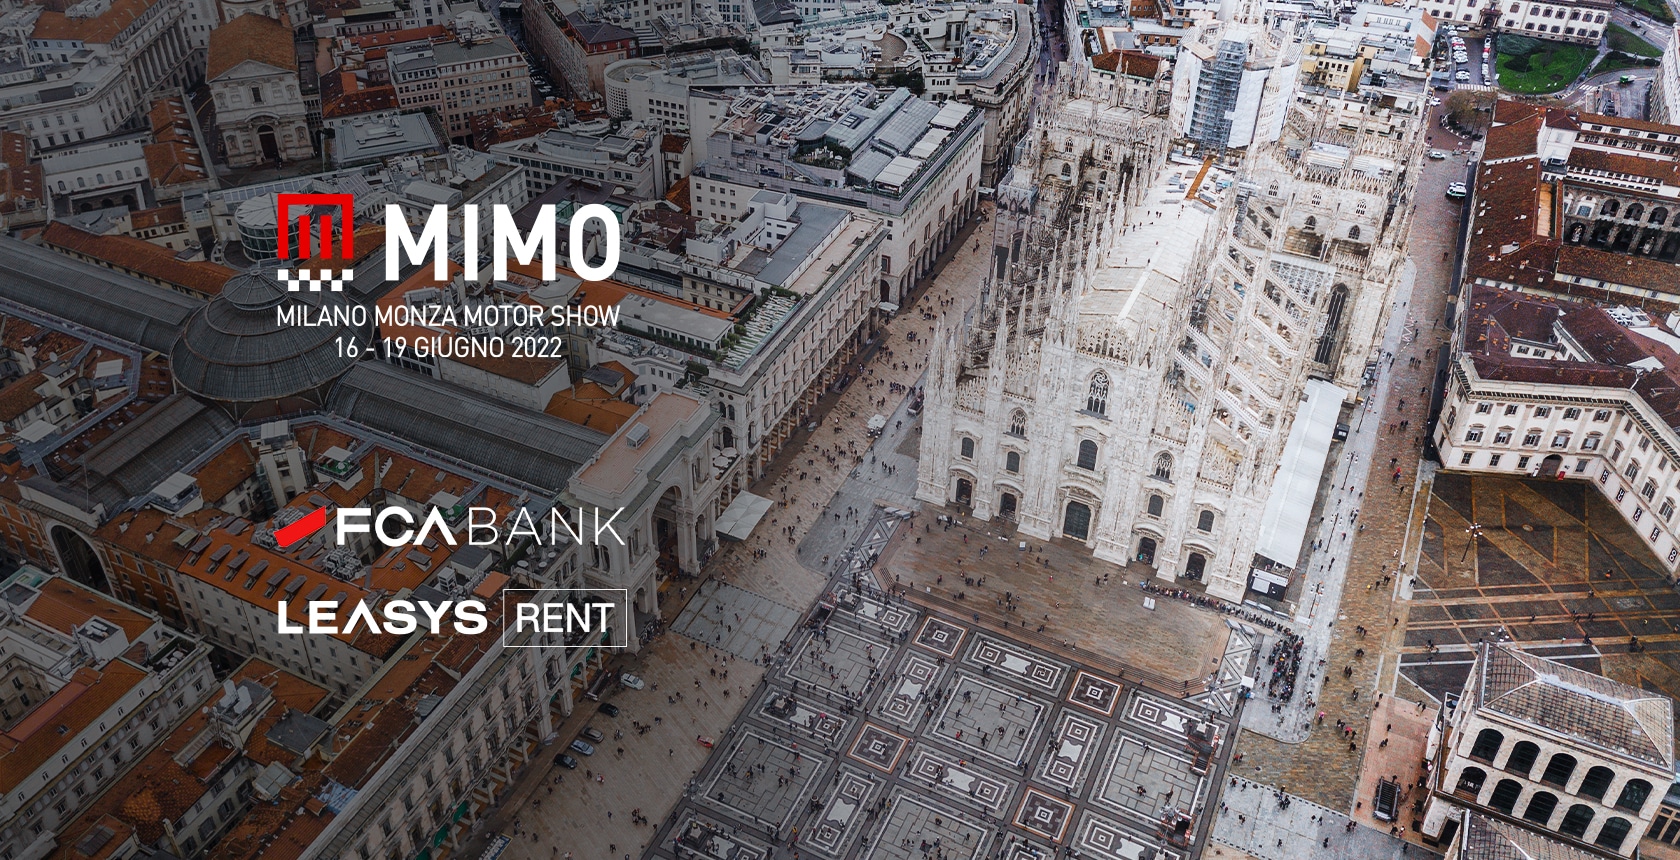 Leasys Rent e FCA Bank presentano nuovi abbonamenti al Milano Monza Motorshow